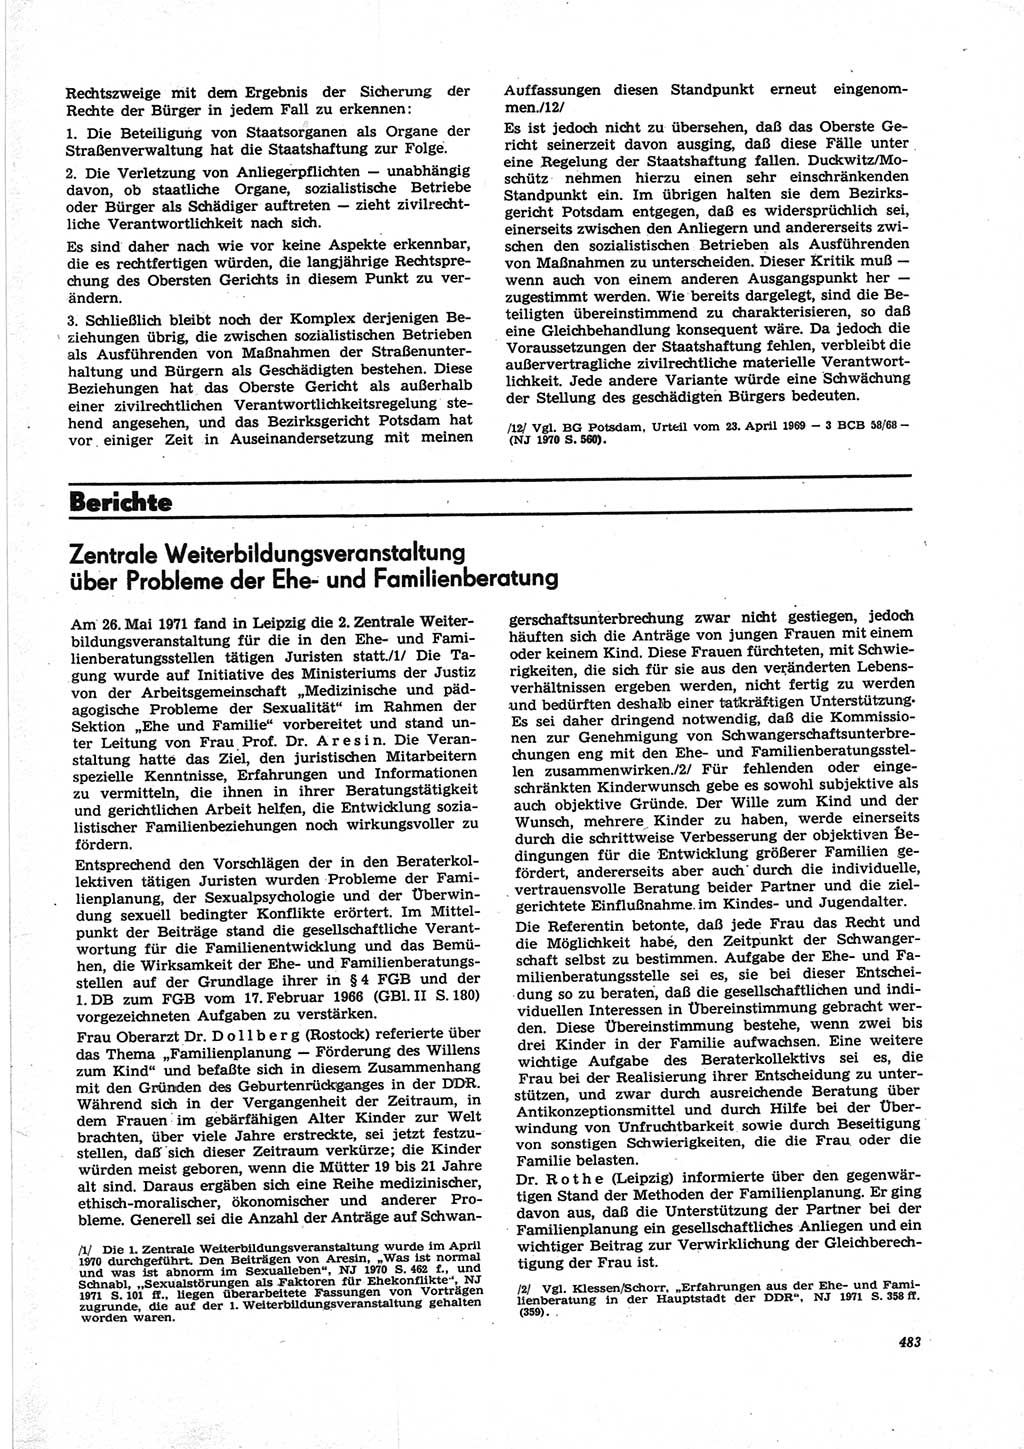 Neue Justiz (NJ), Zeitschrift für Recht und Rechtswissenschaft [Deutsche Demokratische Republik (DDR)], 25. Jahrgang 1971, Seite 483 (NJ DDR 1971, S. 483)